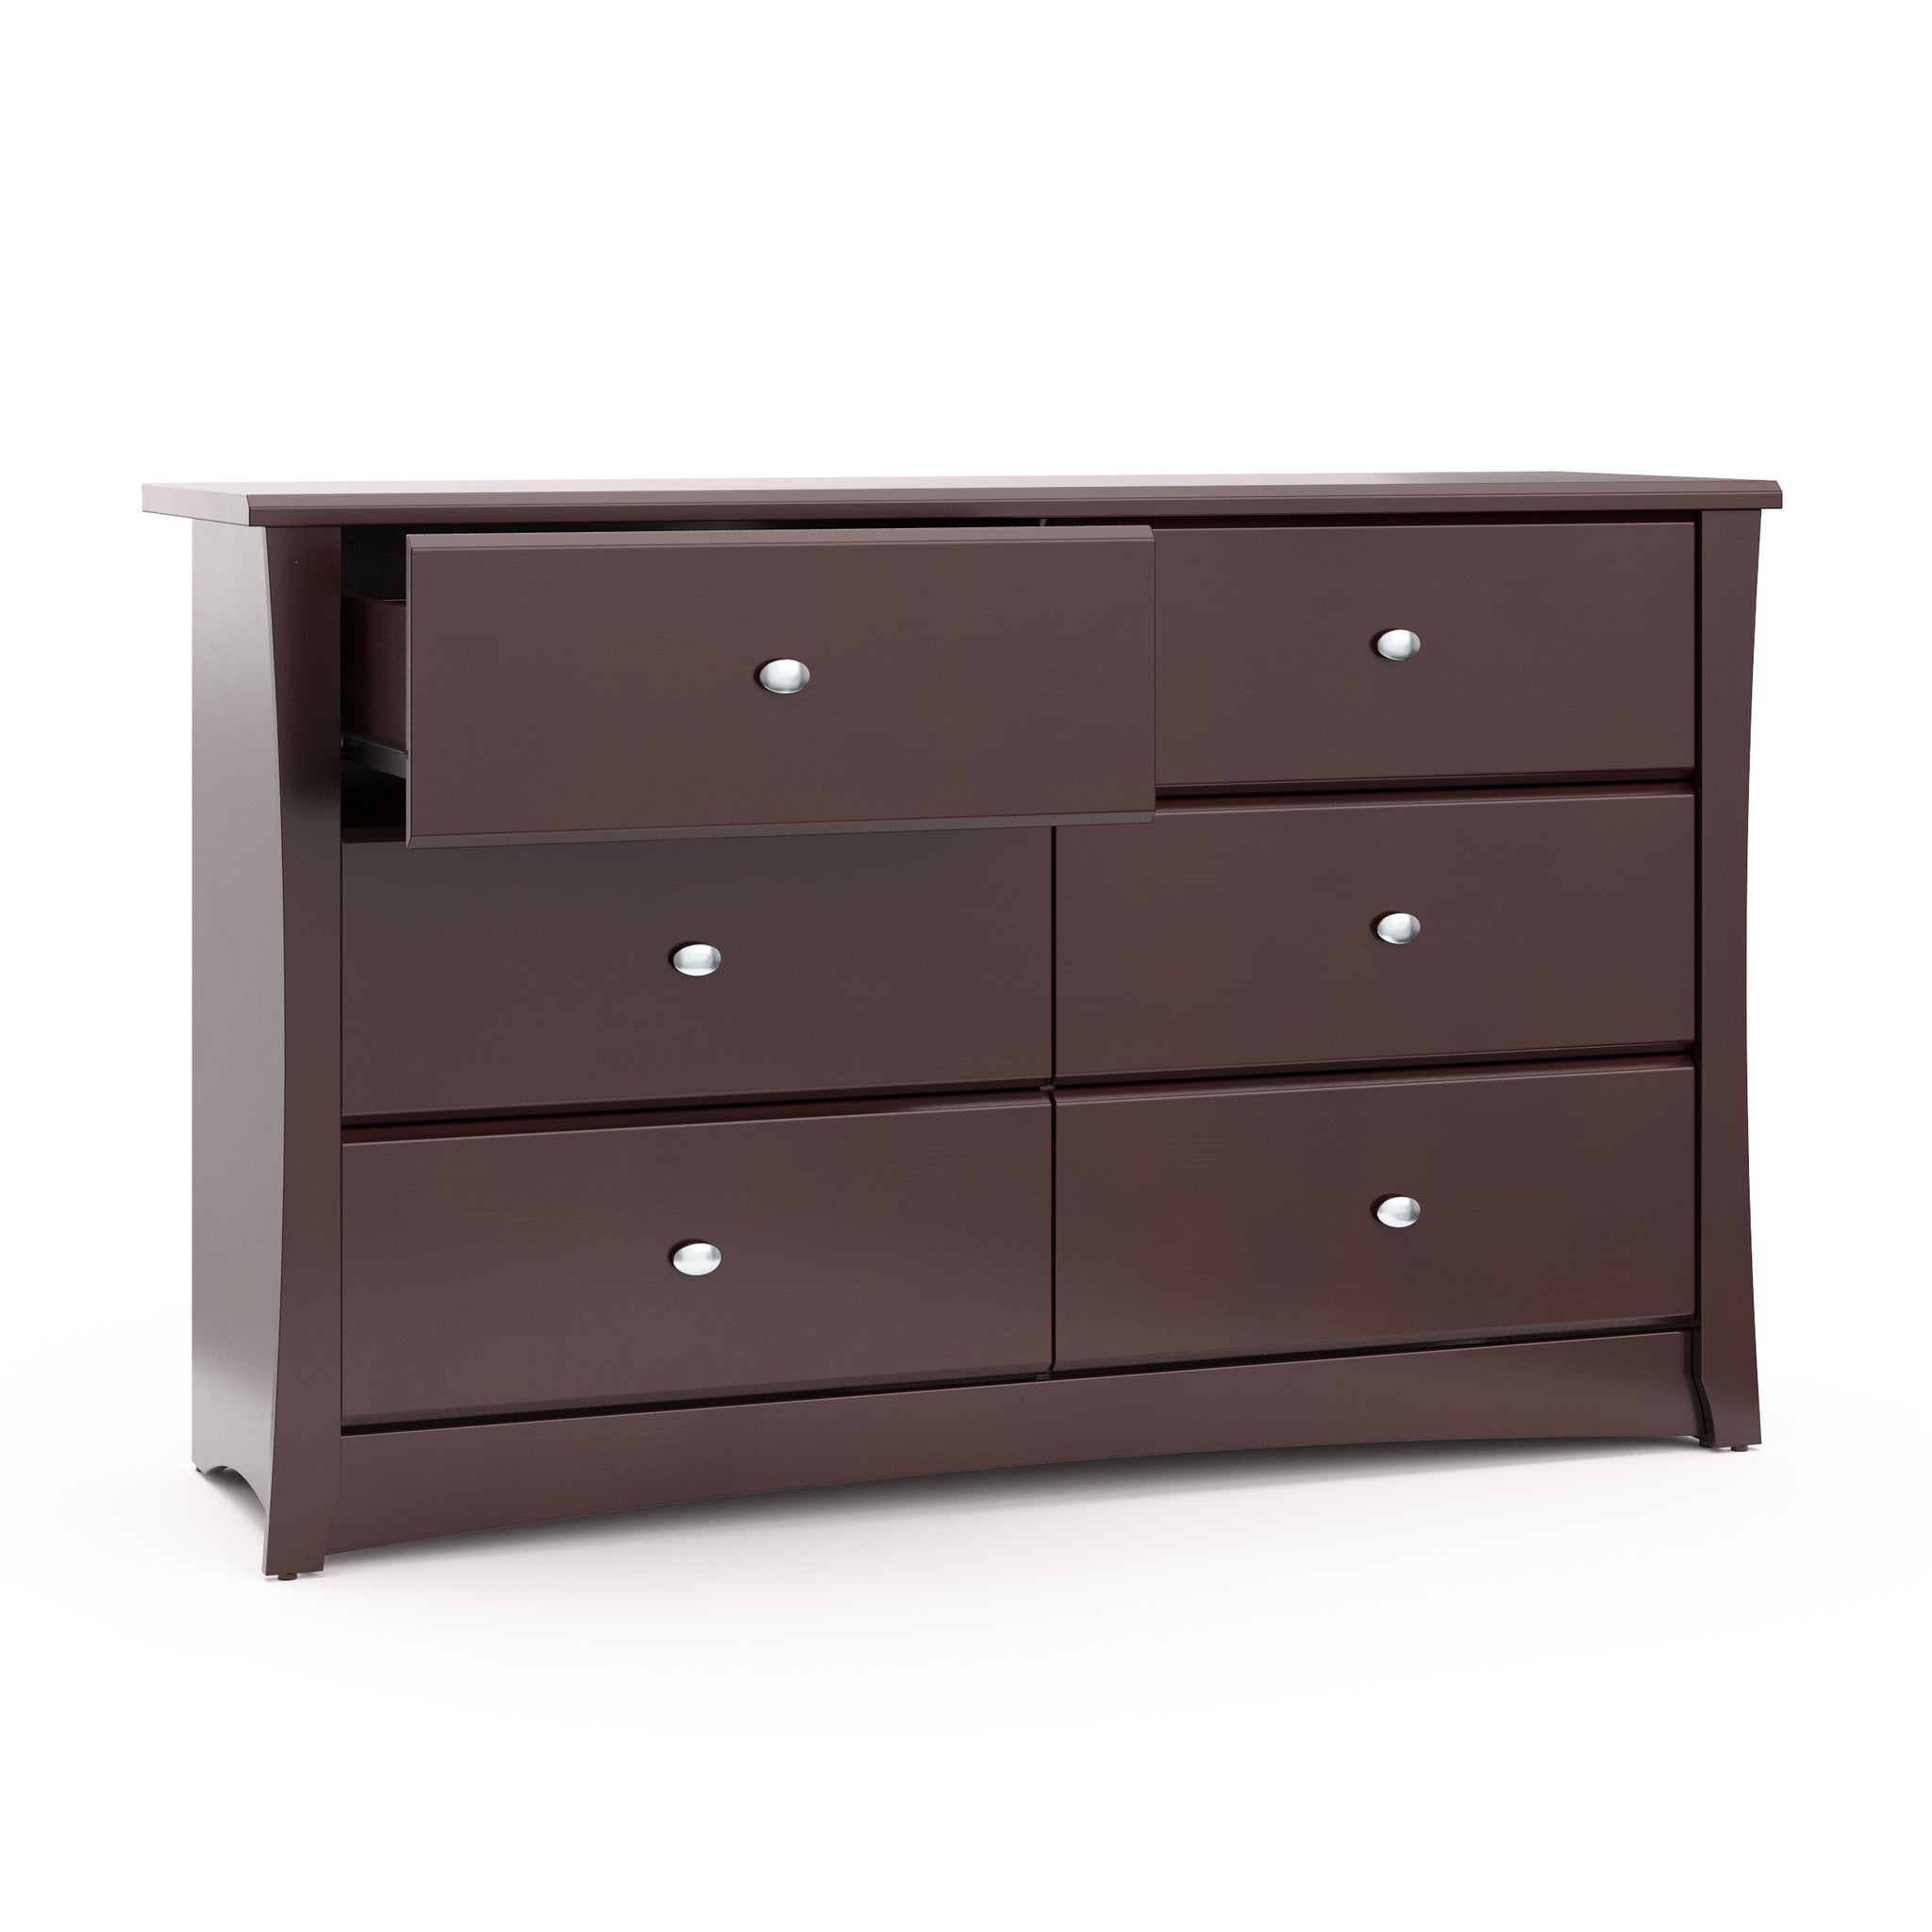 espresso 6 drawer dresser with open drawer